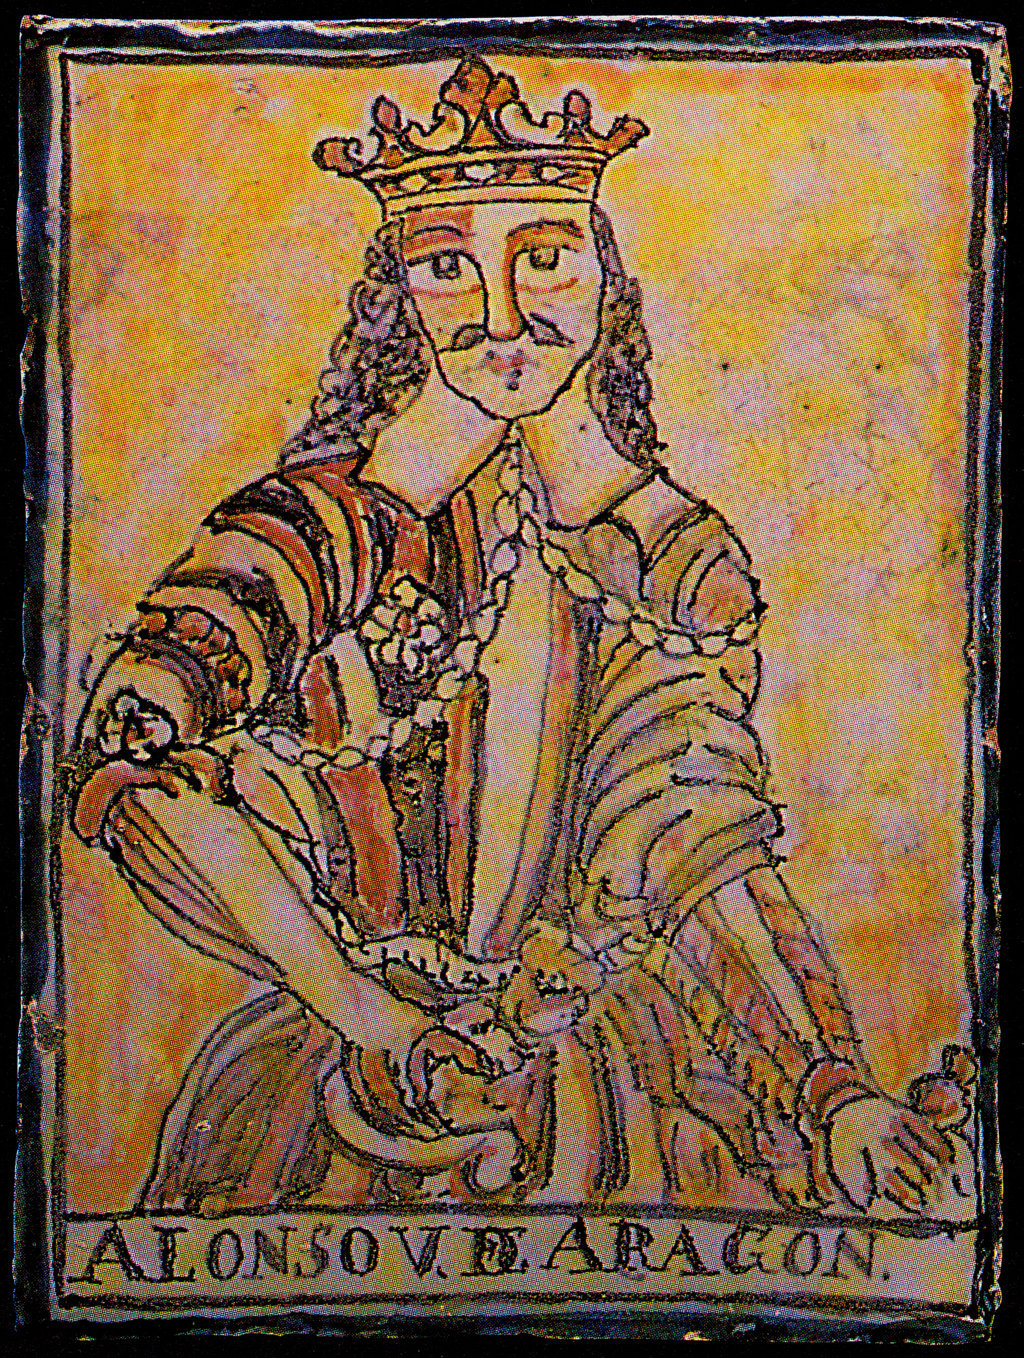 00075. Placa. Retrato de Alfonso V de Aragón. Colección Carranza.